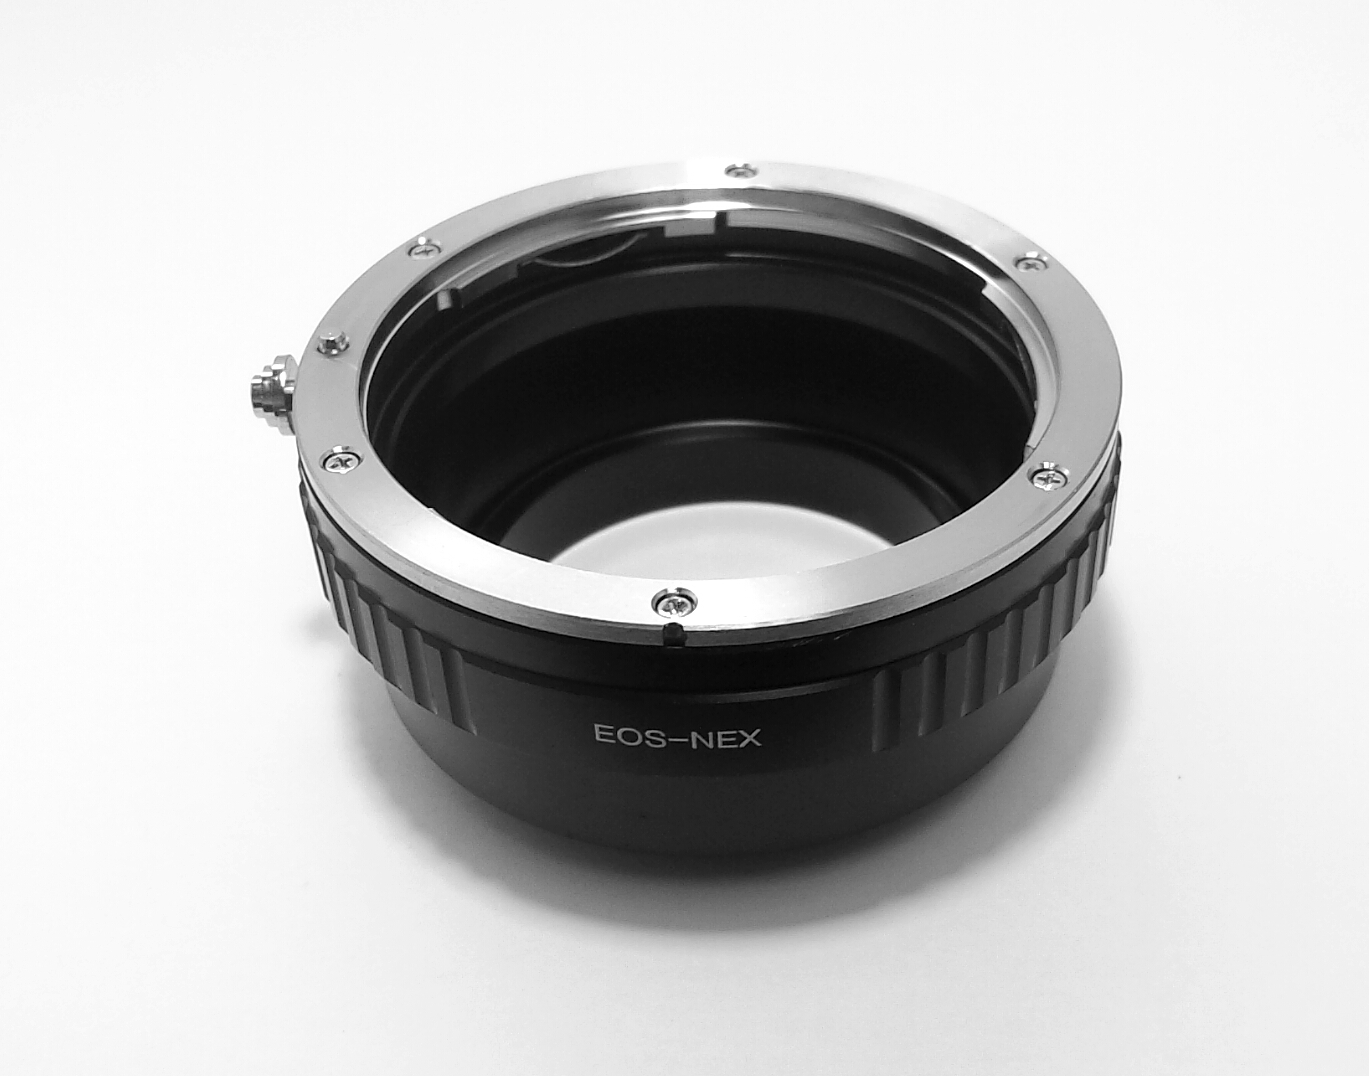 Canon EOS lens to Sony NEX Camera Body Adapter